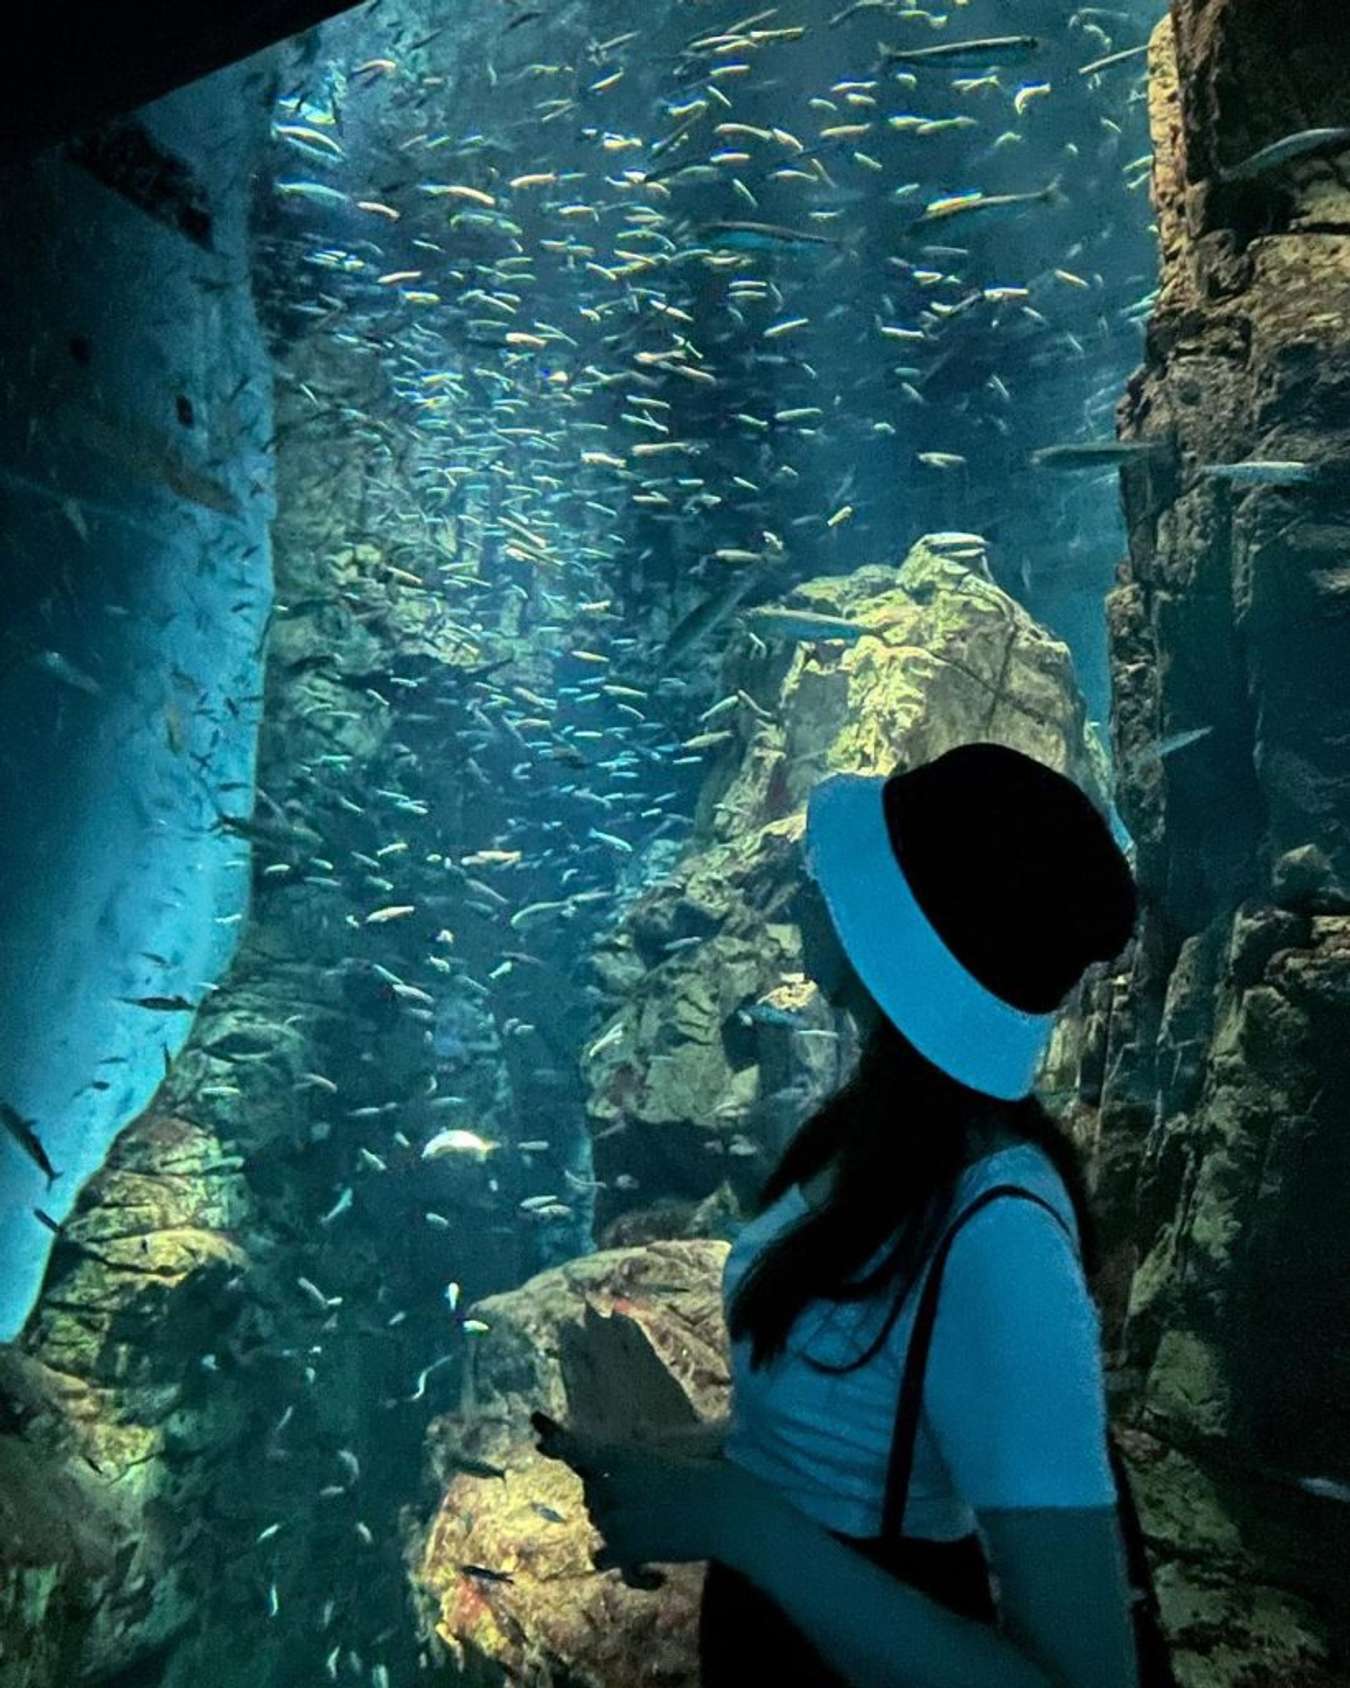 Osaka Aquarium Kaiyukan - Things to do in Osaka